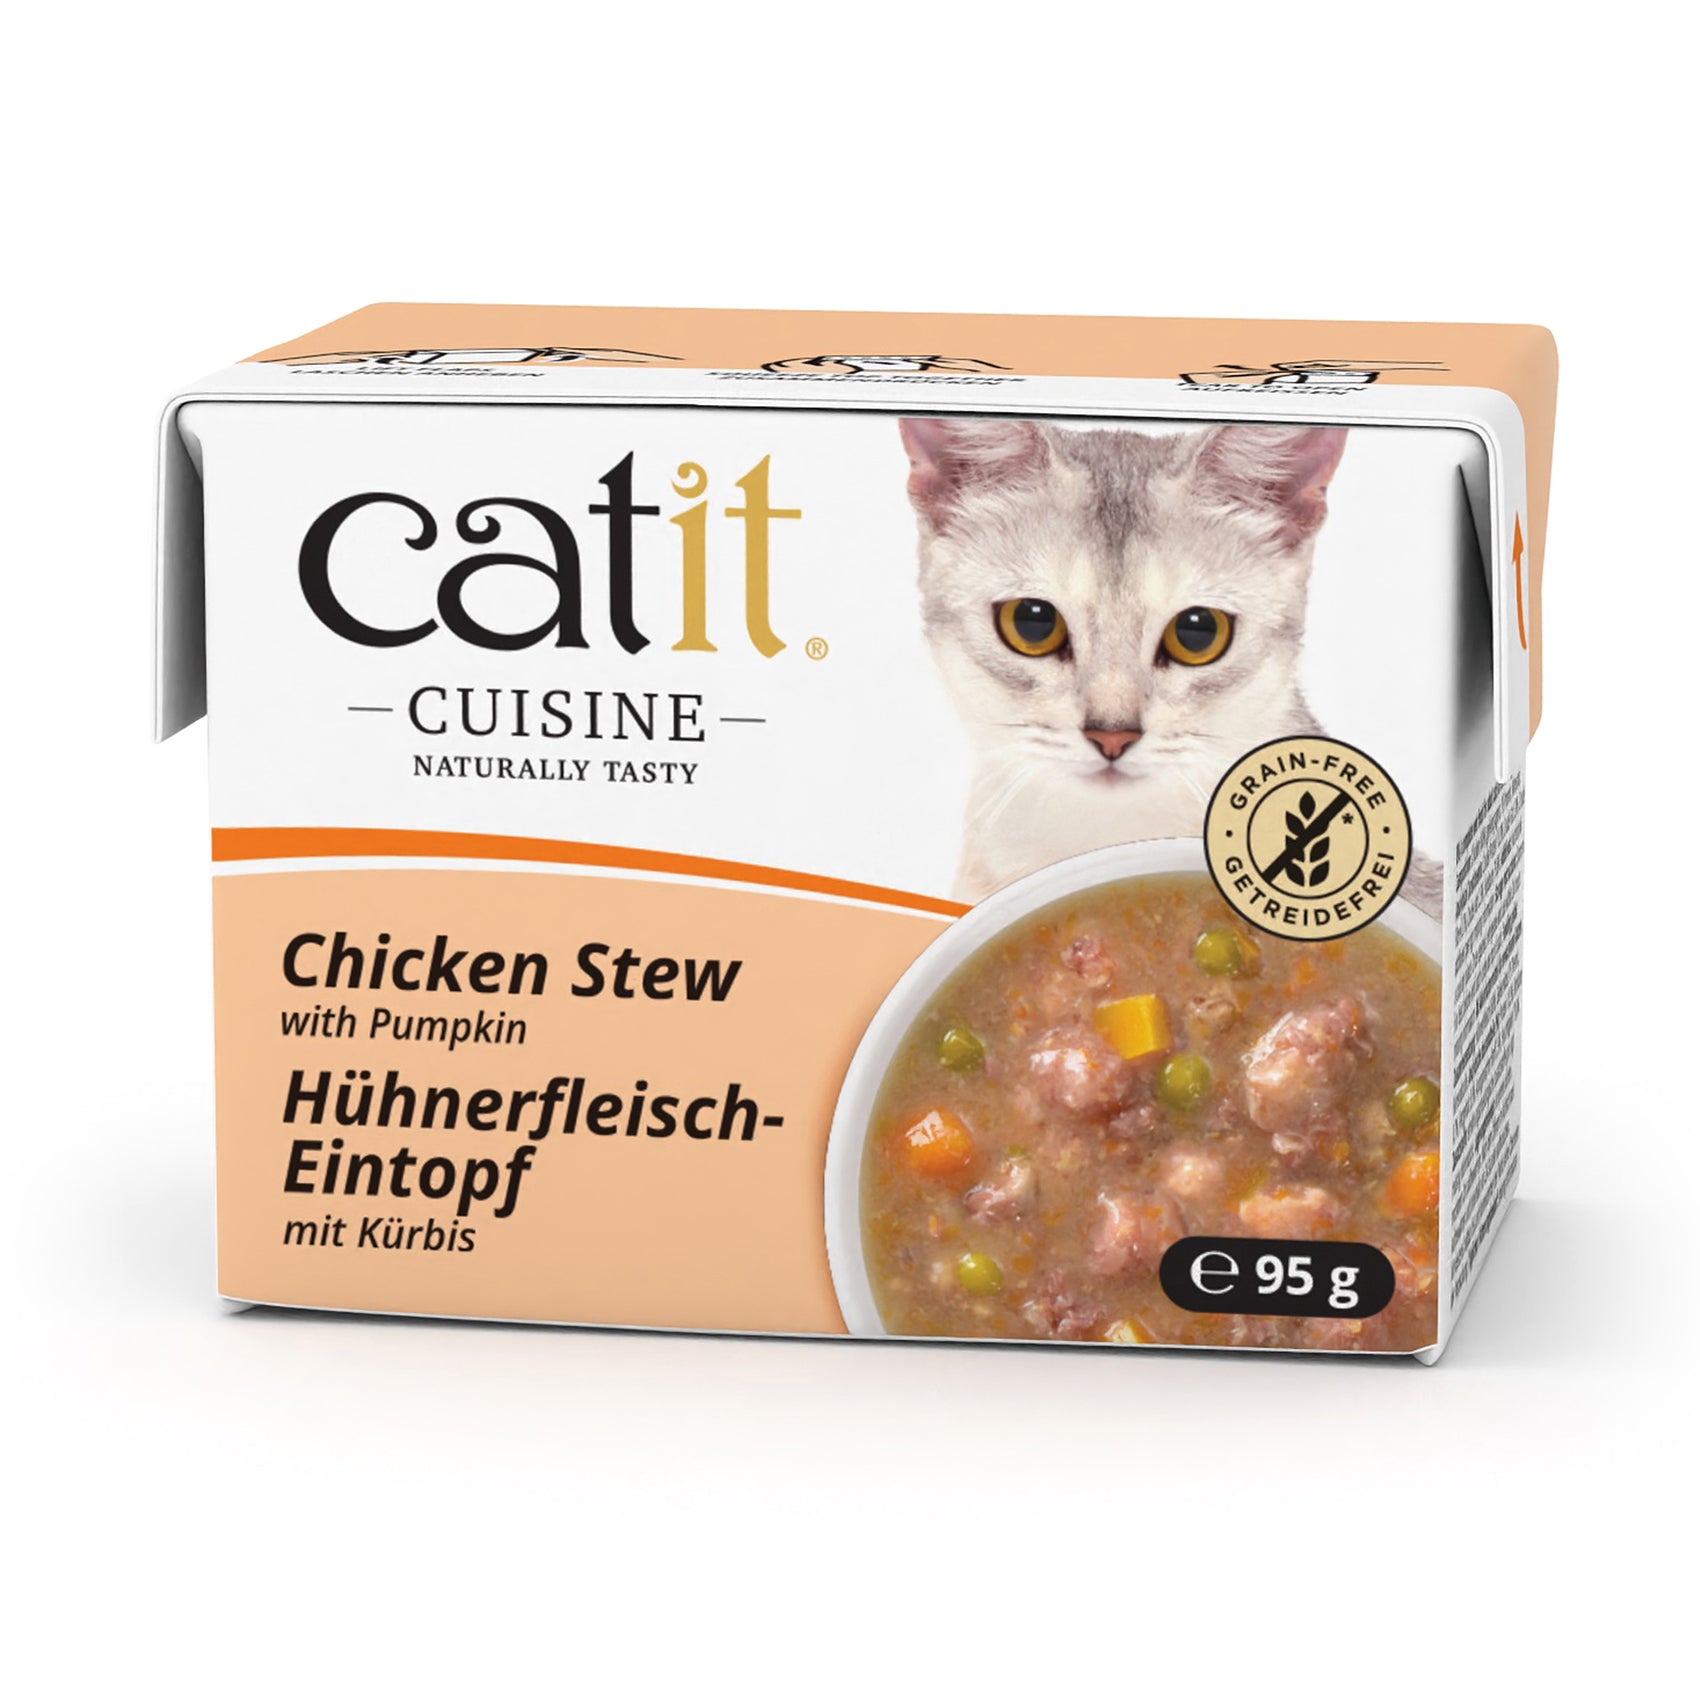 Catit Cuisine Cat Wet Food Chicken Stew 95g